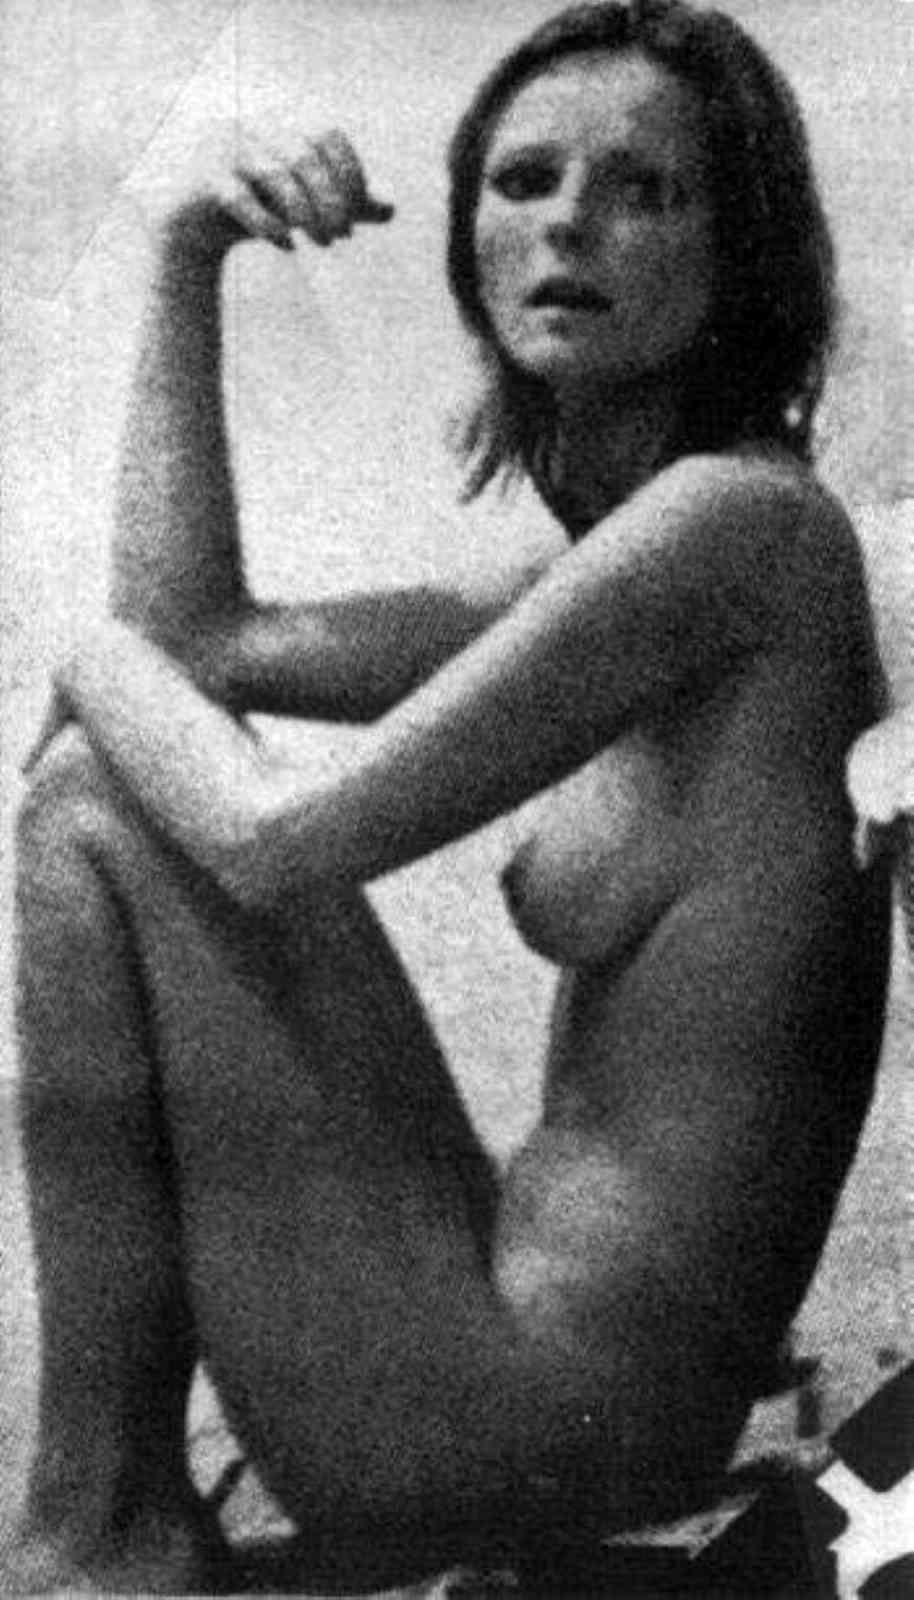 Cheryl tiegs nude pic - Celebrity Nude Century: Cheryl Tiegs (Supermodel) .